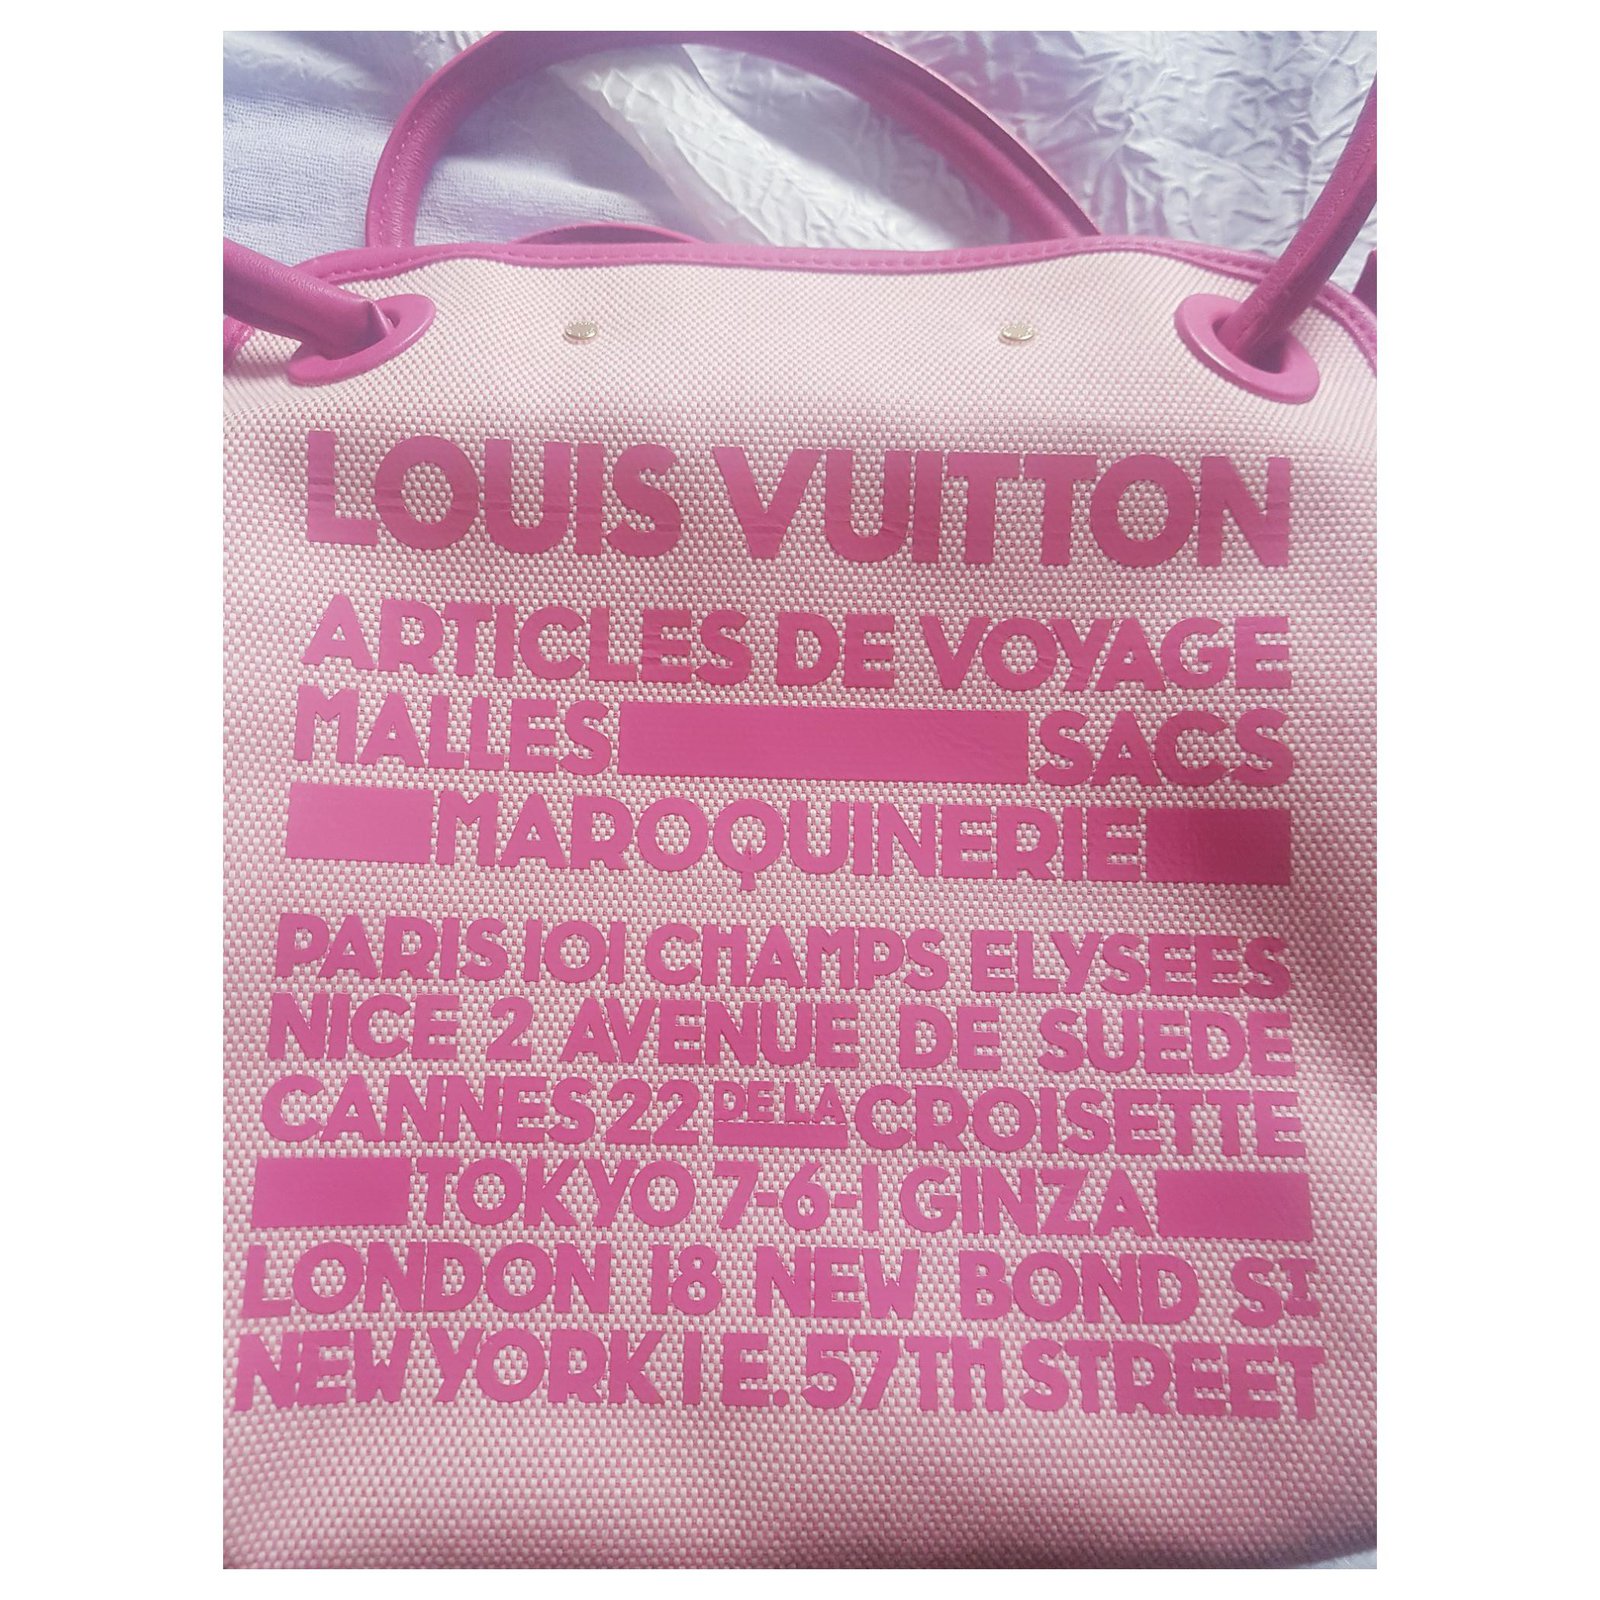 Louis Vuitton Cruise 2009 Collection - Bags 